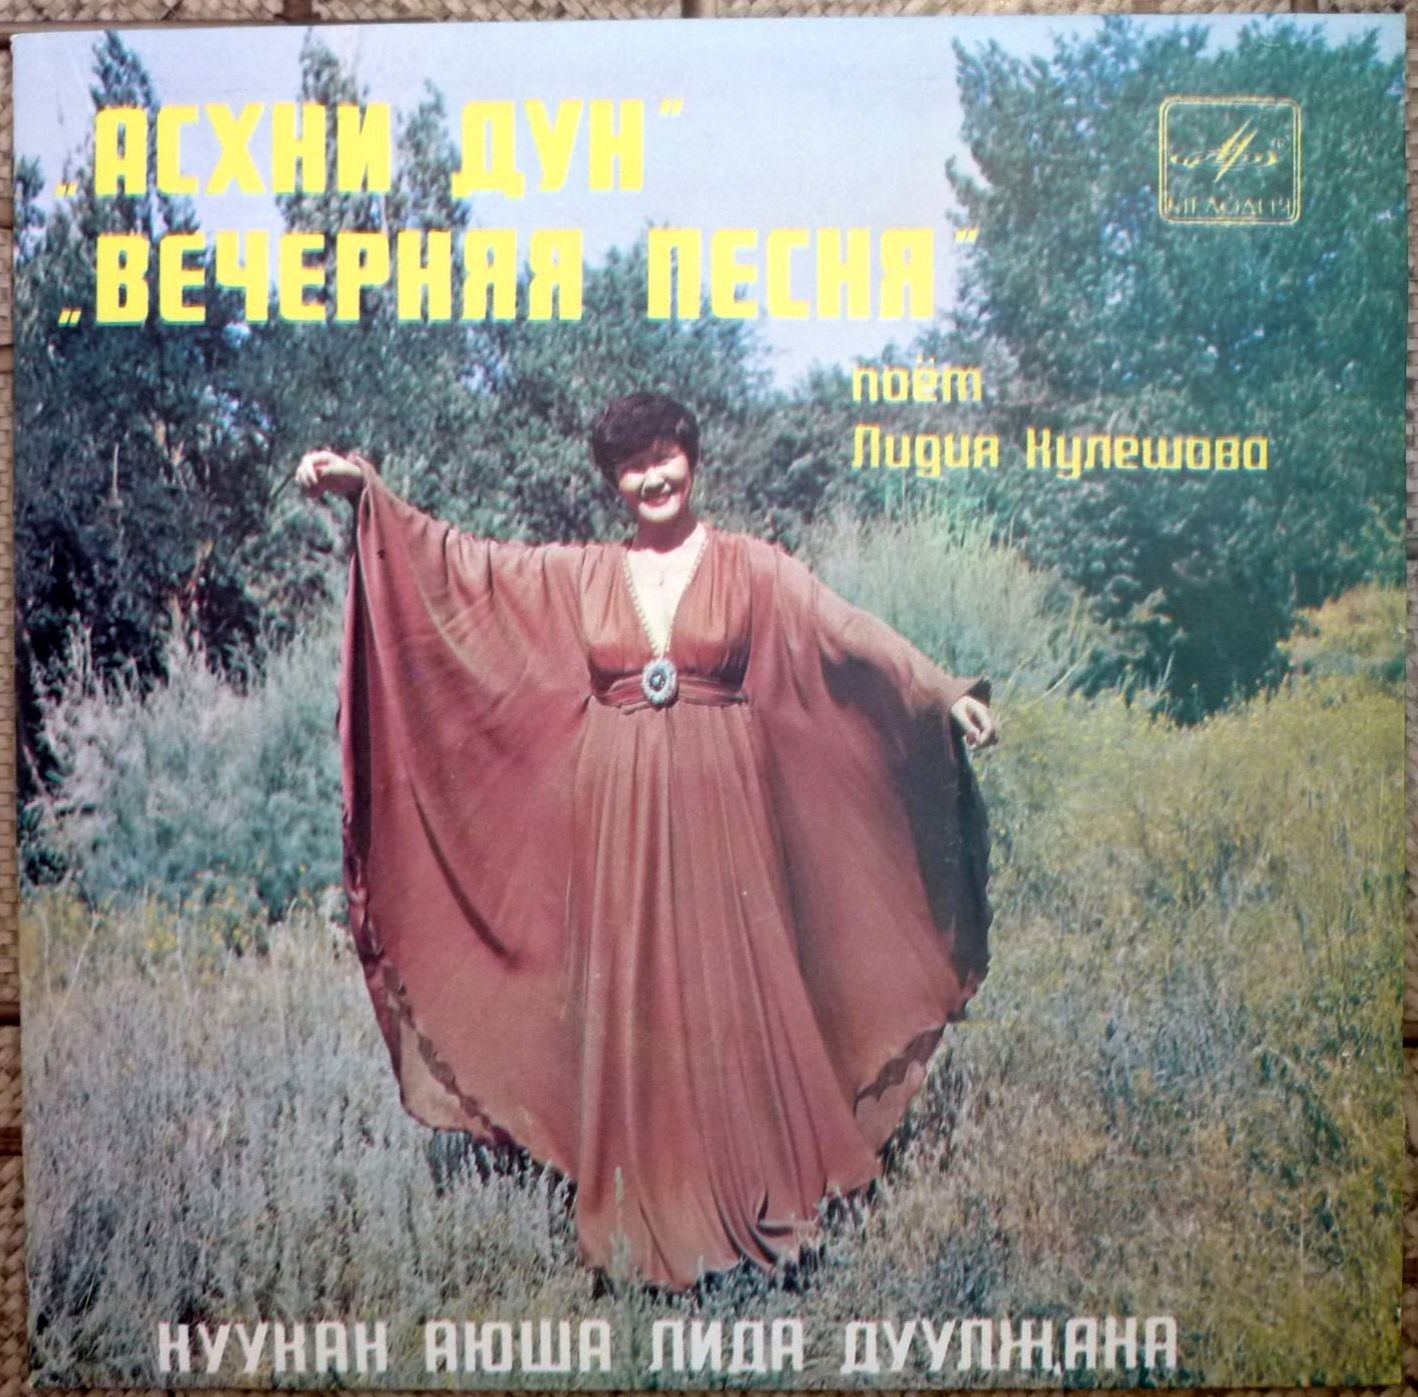 Лидия КУЛЕШОВА «Вечерняя песня» — на калмыцком языке